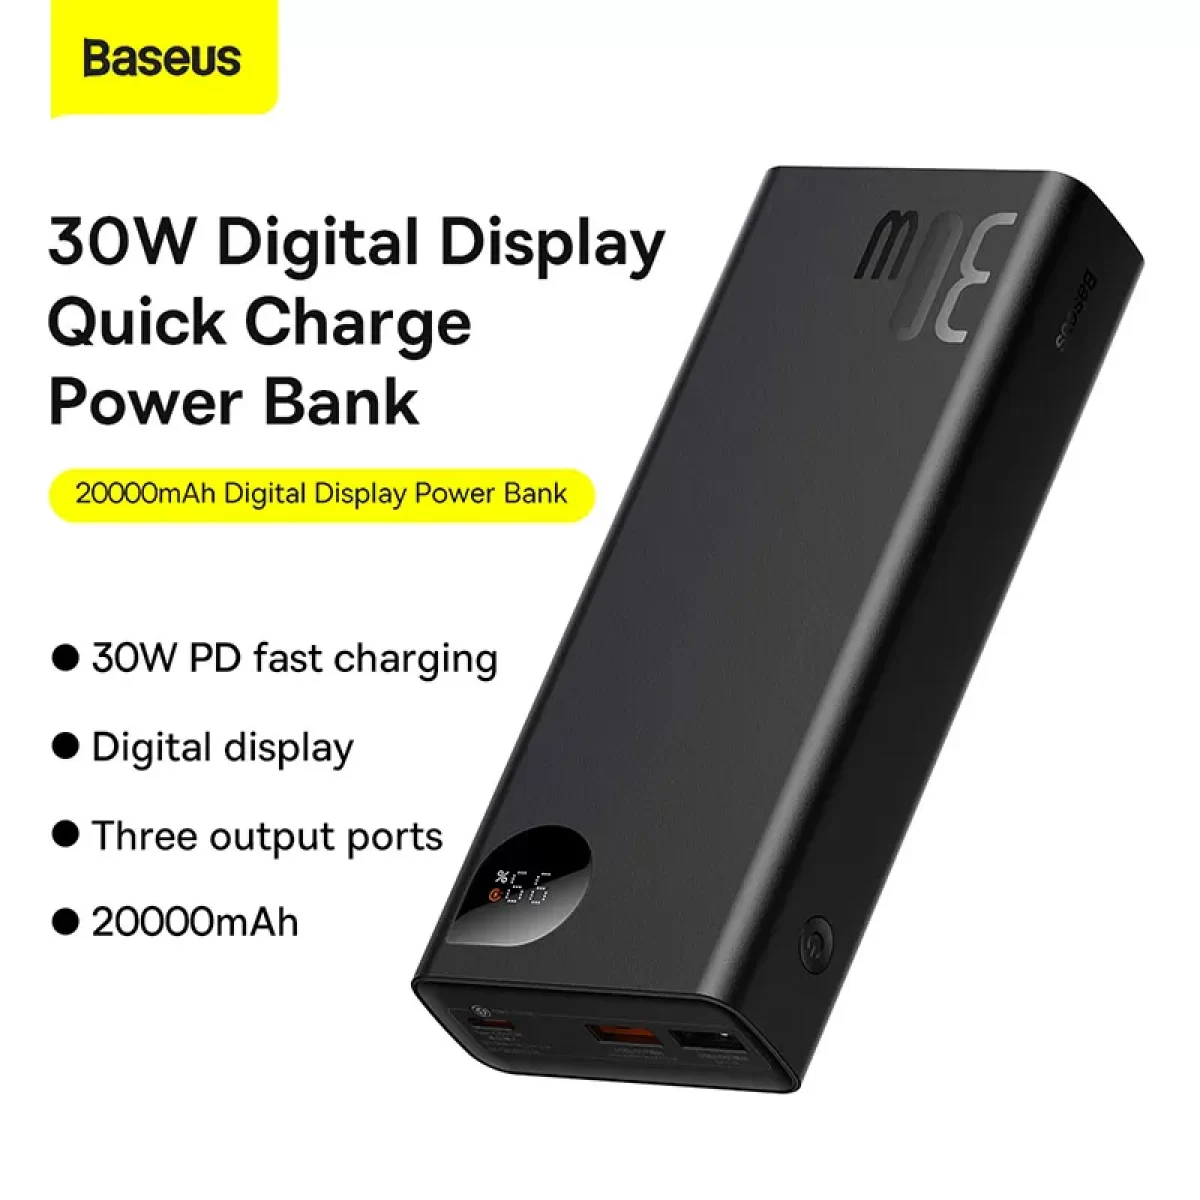 Baseus Adaman Metal Digital Display 30W Quick Charge 20000mAh